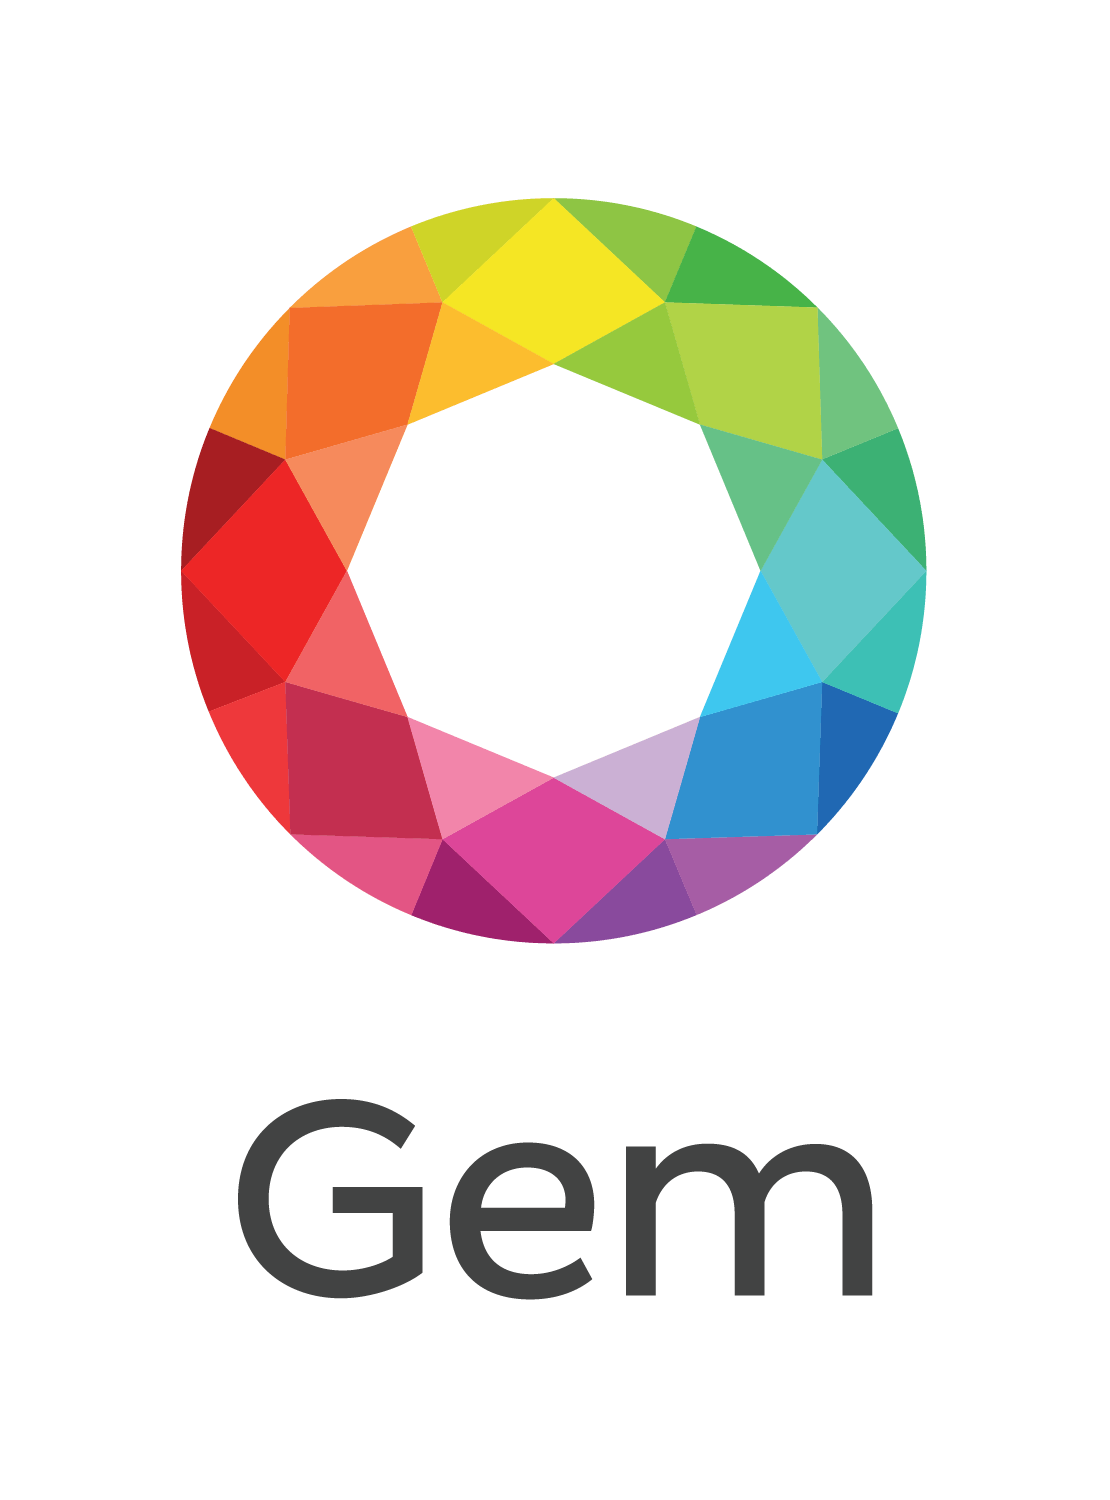 Gems Logo - Logo gems png PNG Image